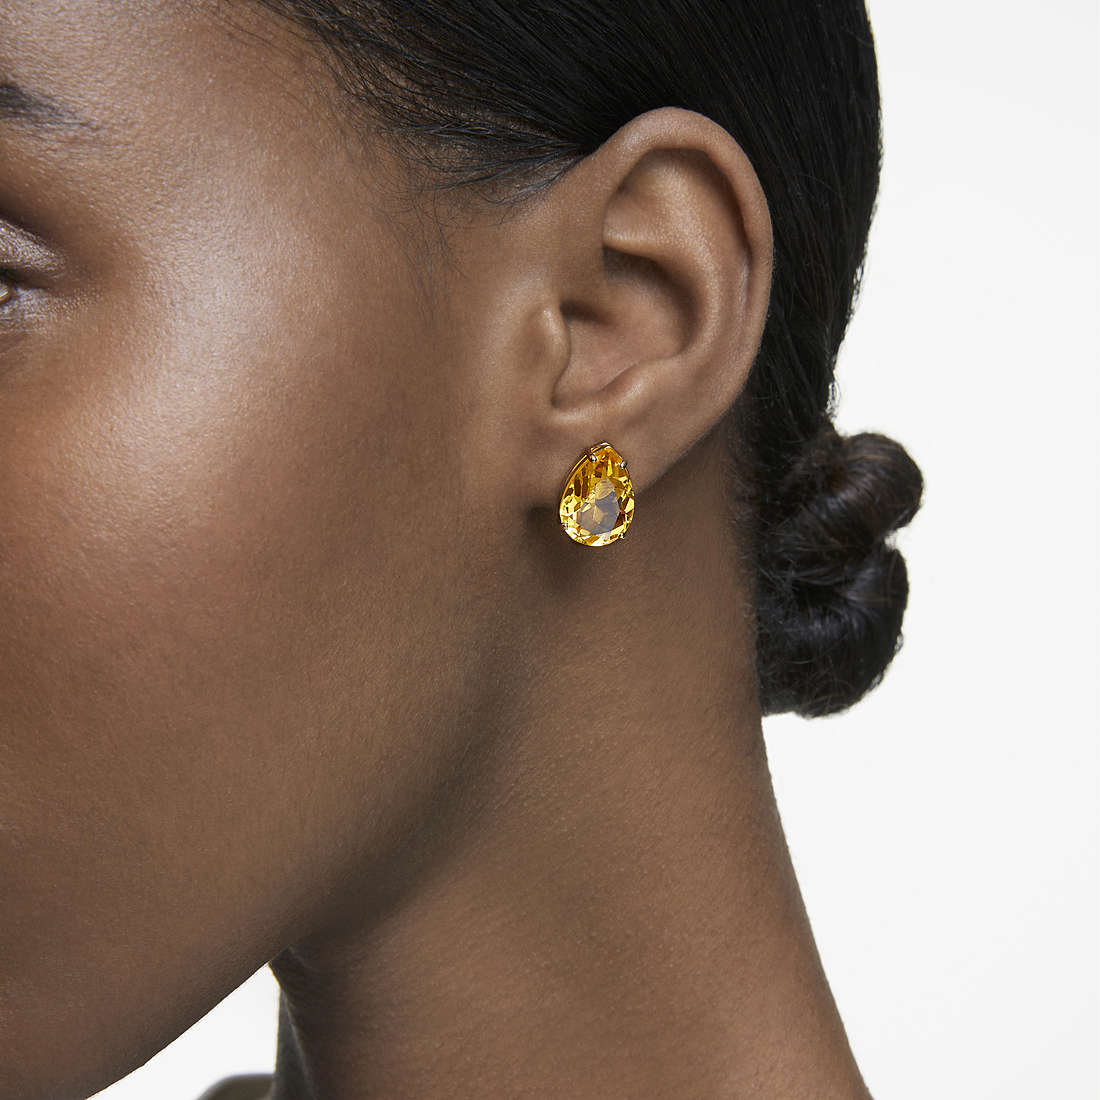 Swarovski earrings Millenia woman 5619495 wearing